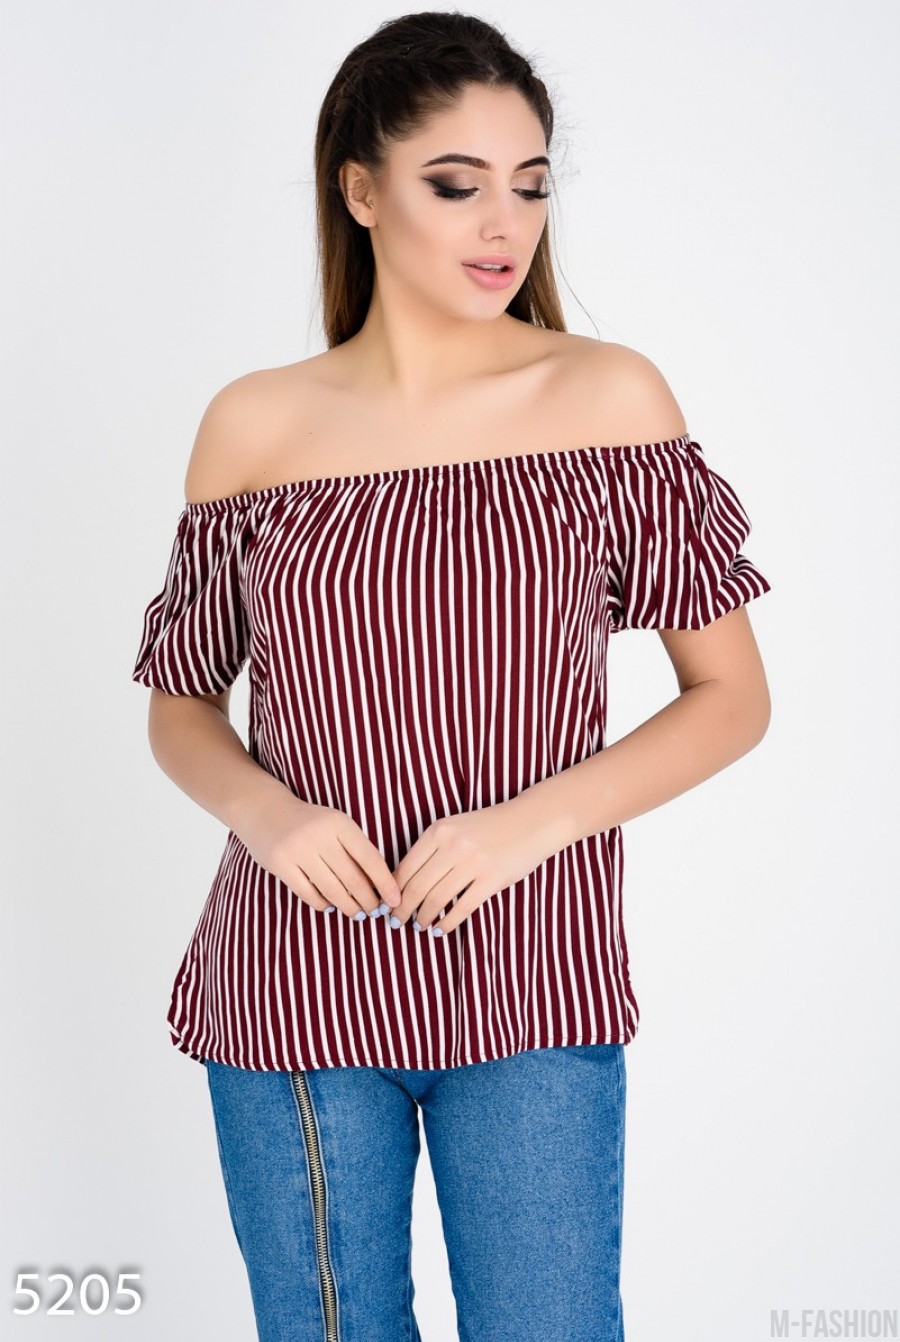 Бордовая в белую полоску удлиненная блуза с открытыми плечами - Фото 1